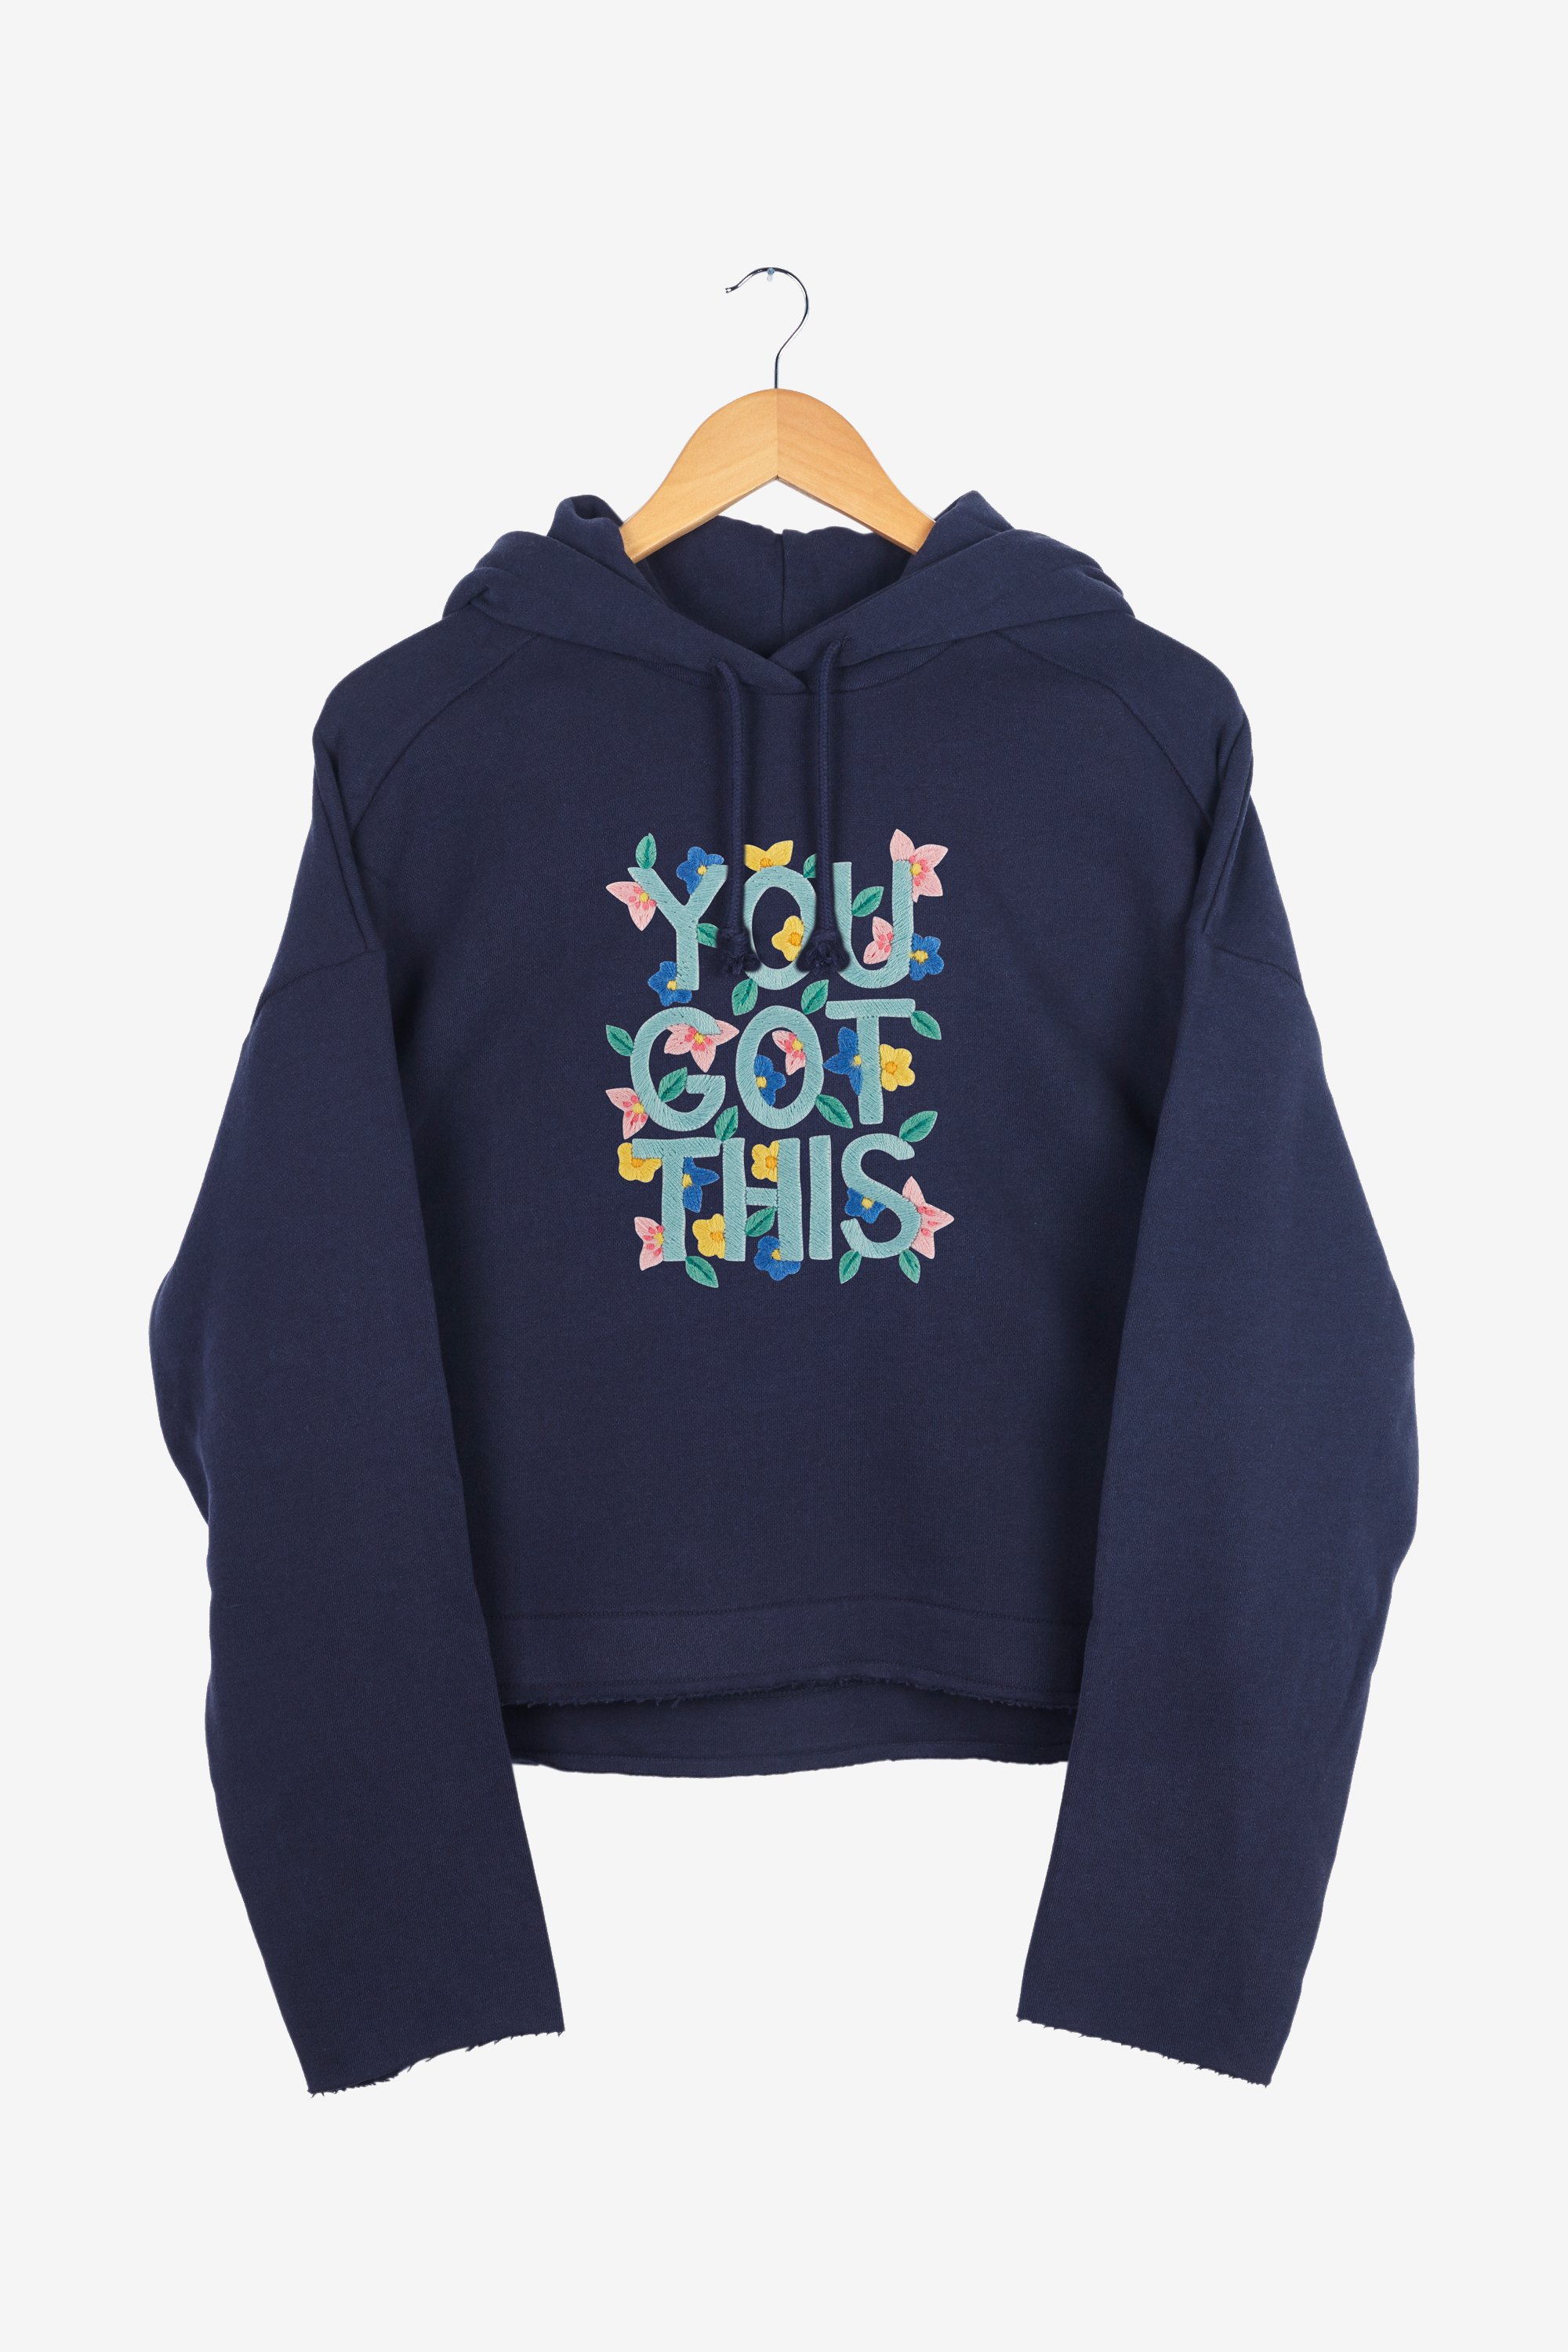 5 Color Embroidery LOVE PHISH Unisex fleece sweatshirt